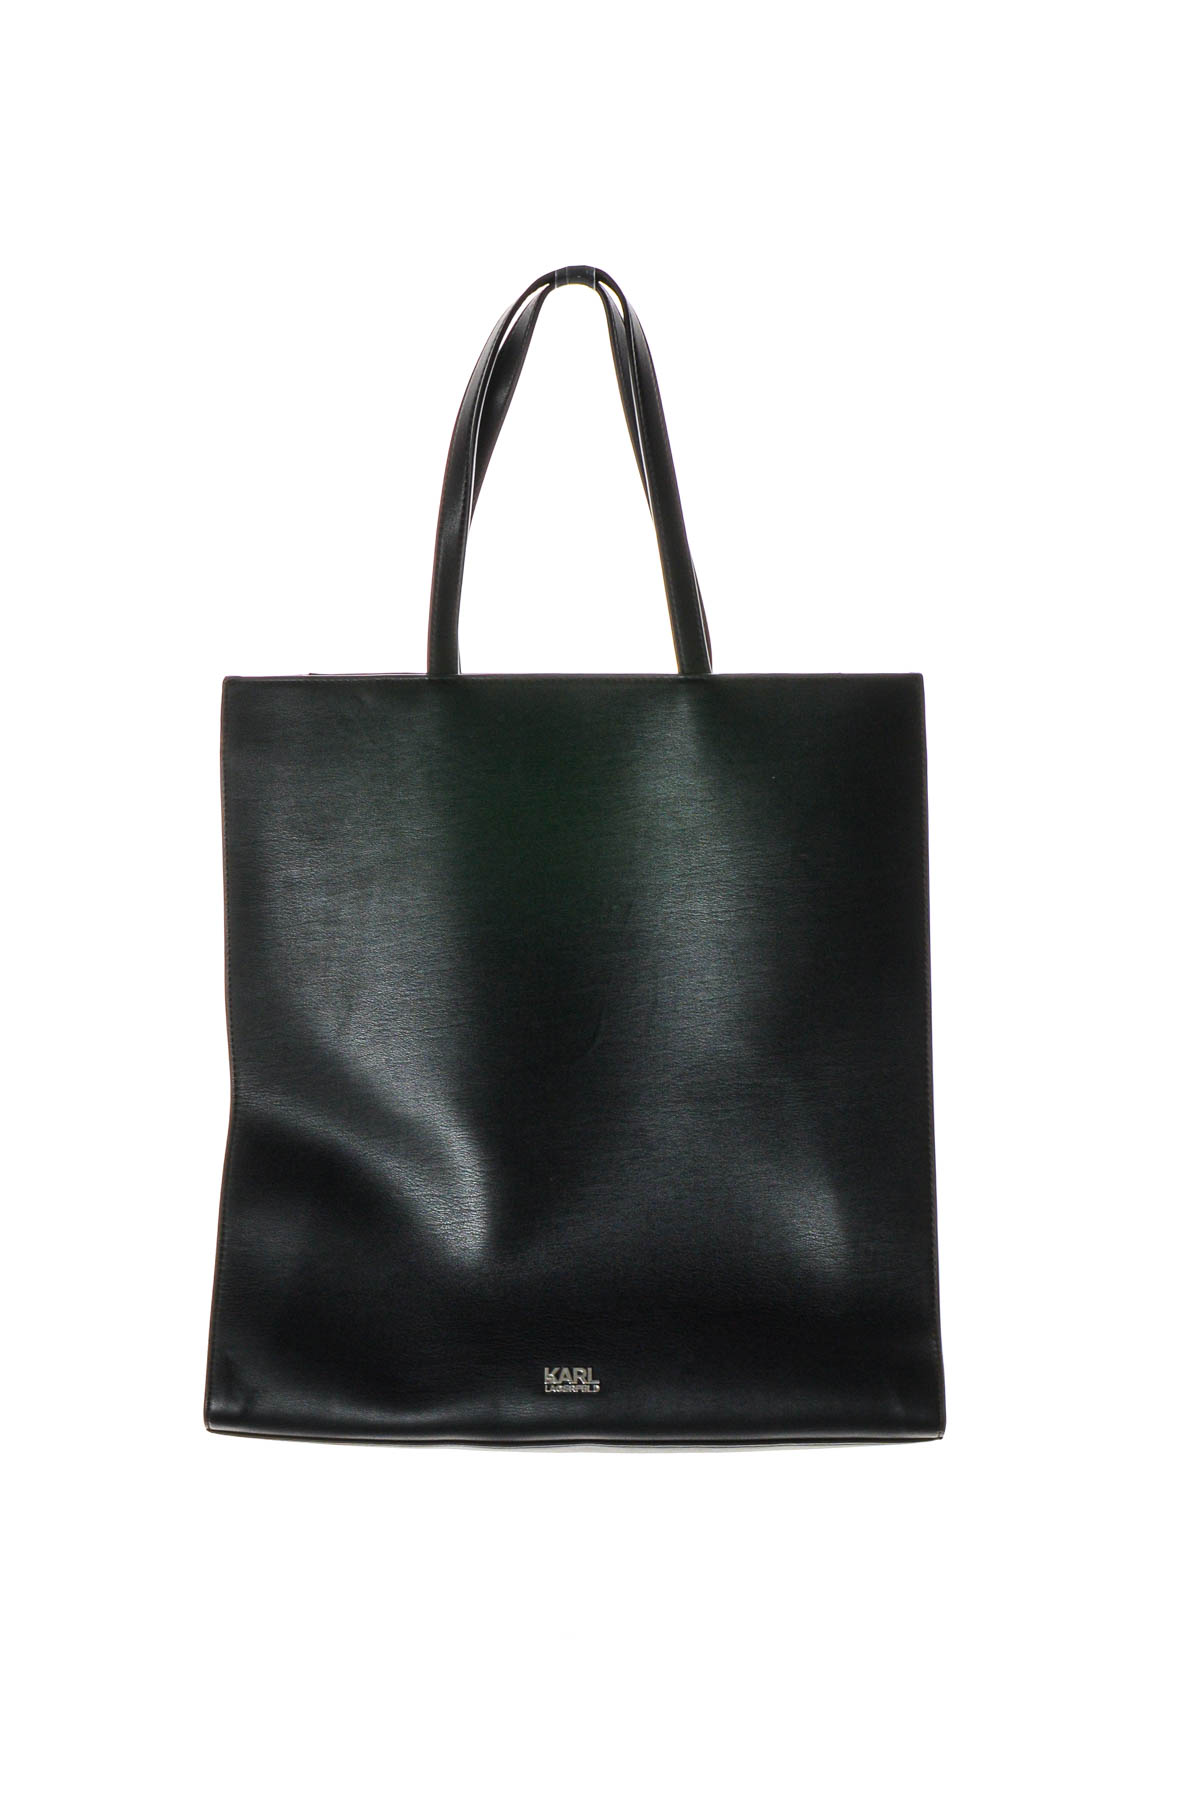 Women's bag - KARL LAGERFELD - 1